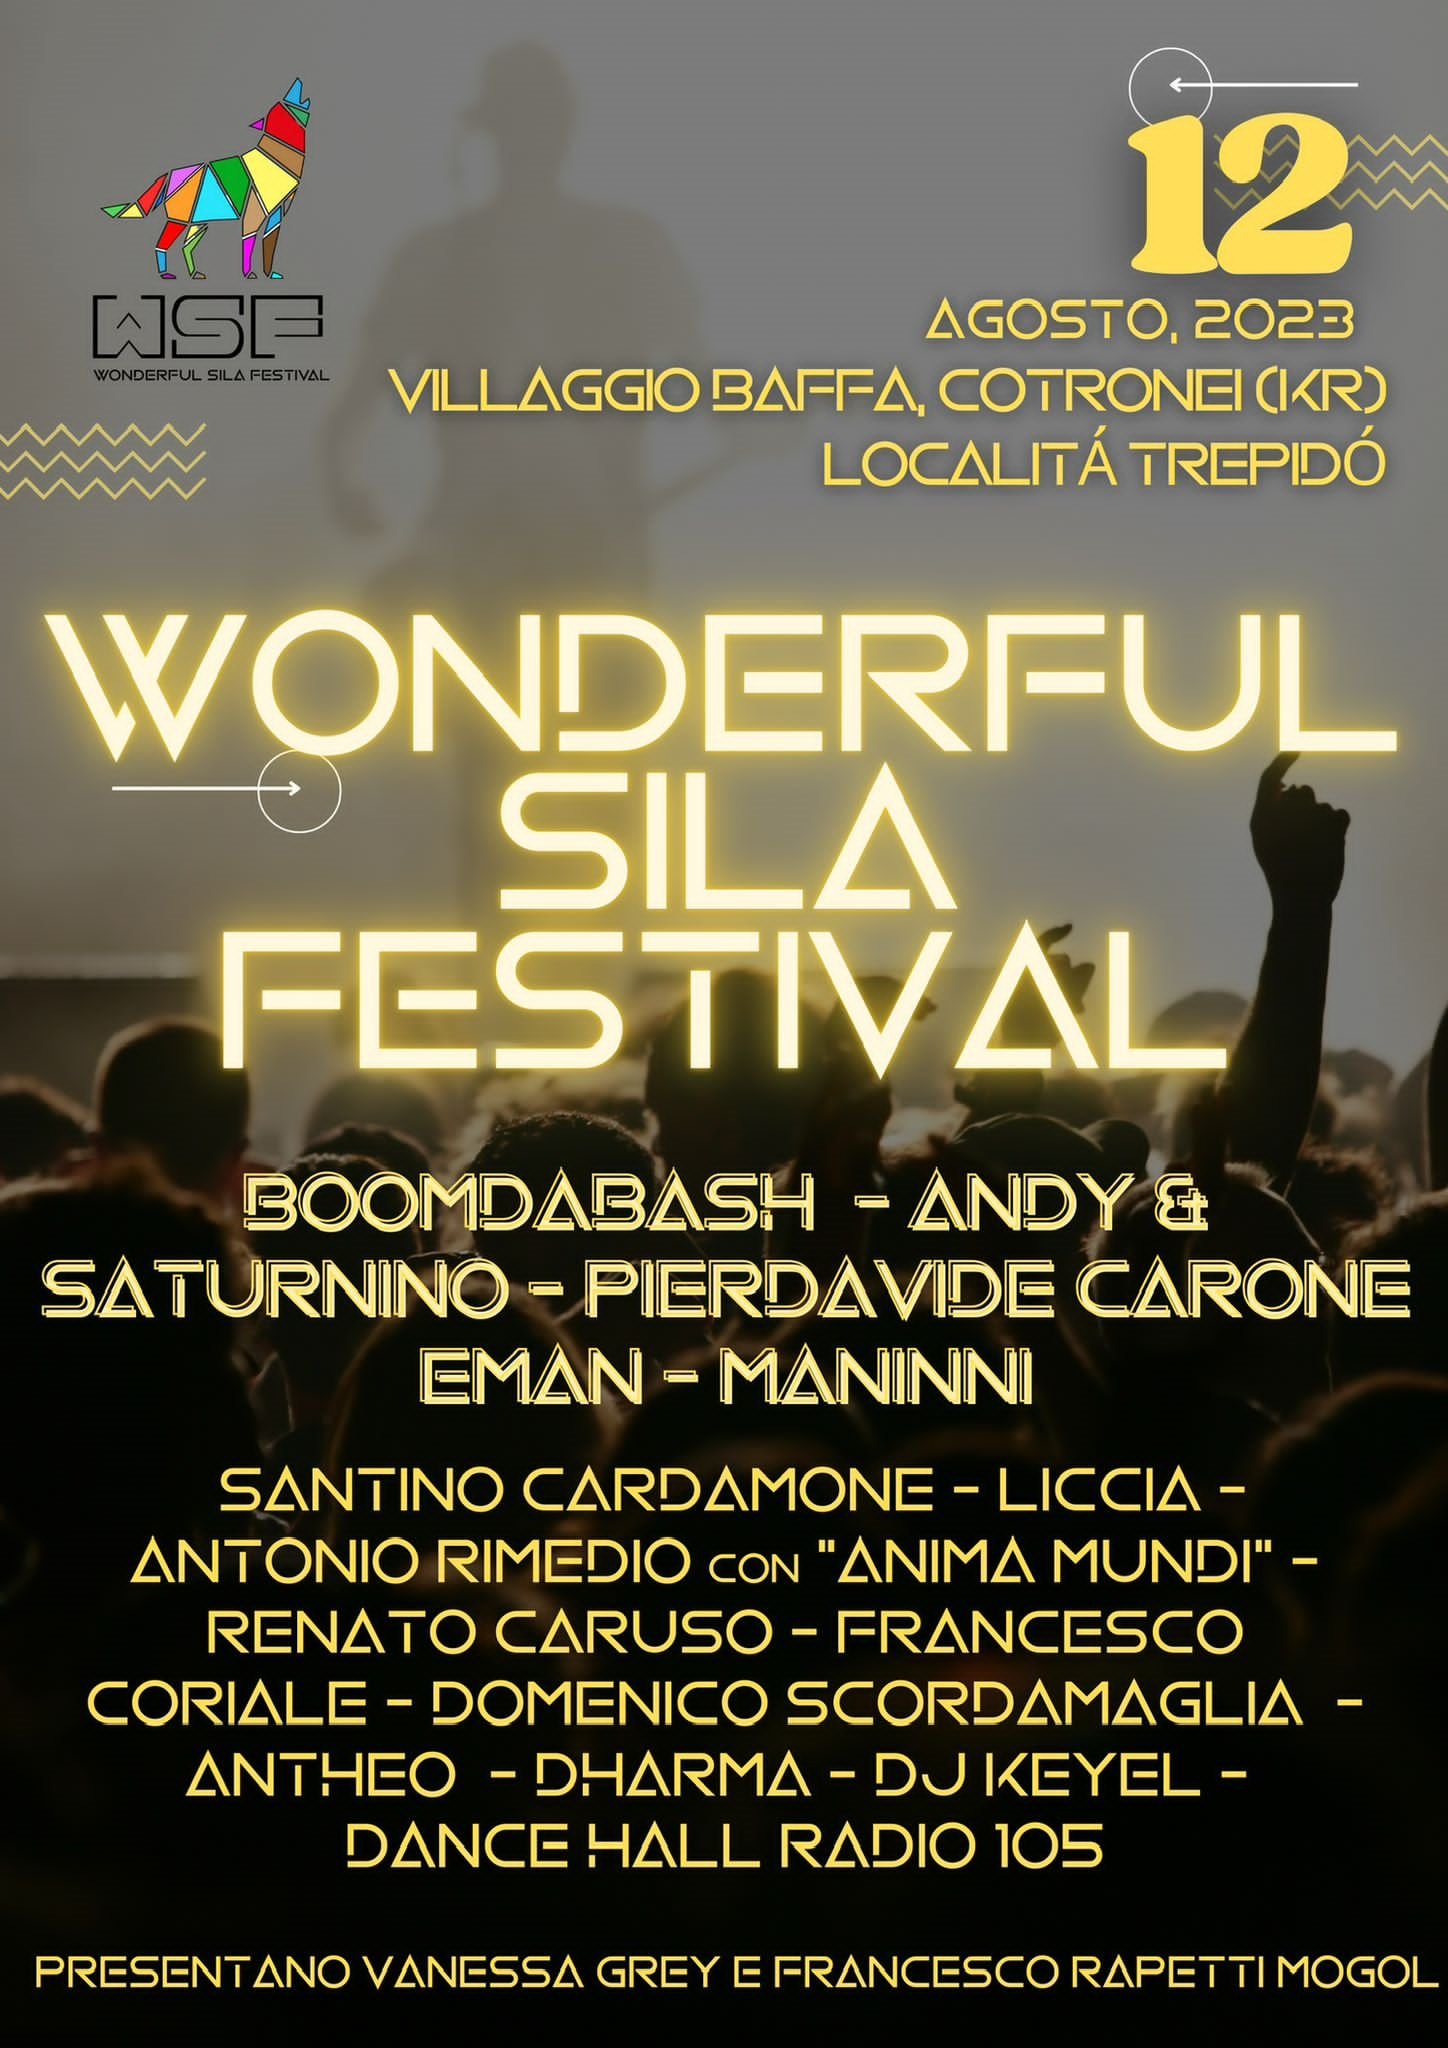 WONDERFUL SILA FESTIVAL: sabato 12 agosto a Cotronei (KR) al via la 1^ edizione, 12 ore di musica live e intrattenimento nel cuore della Calabria